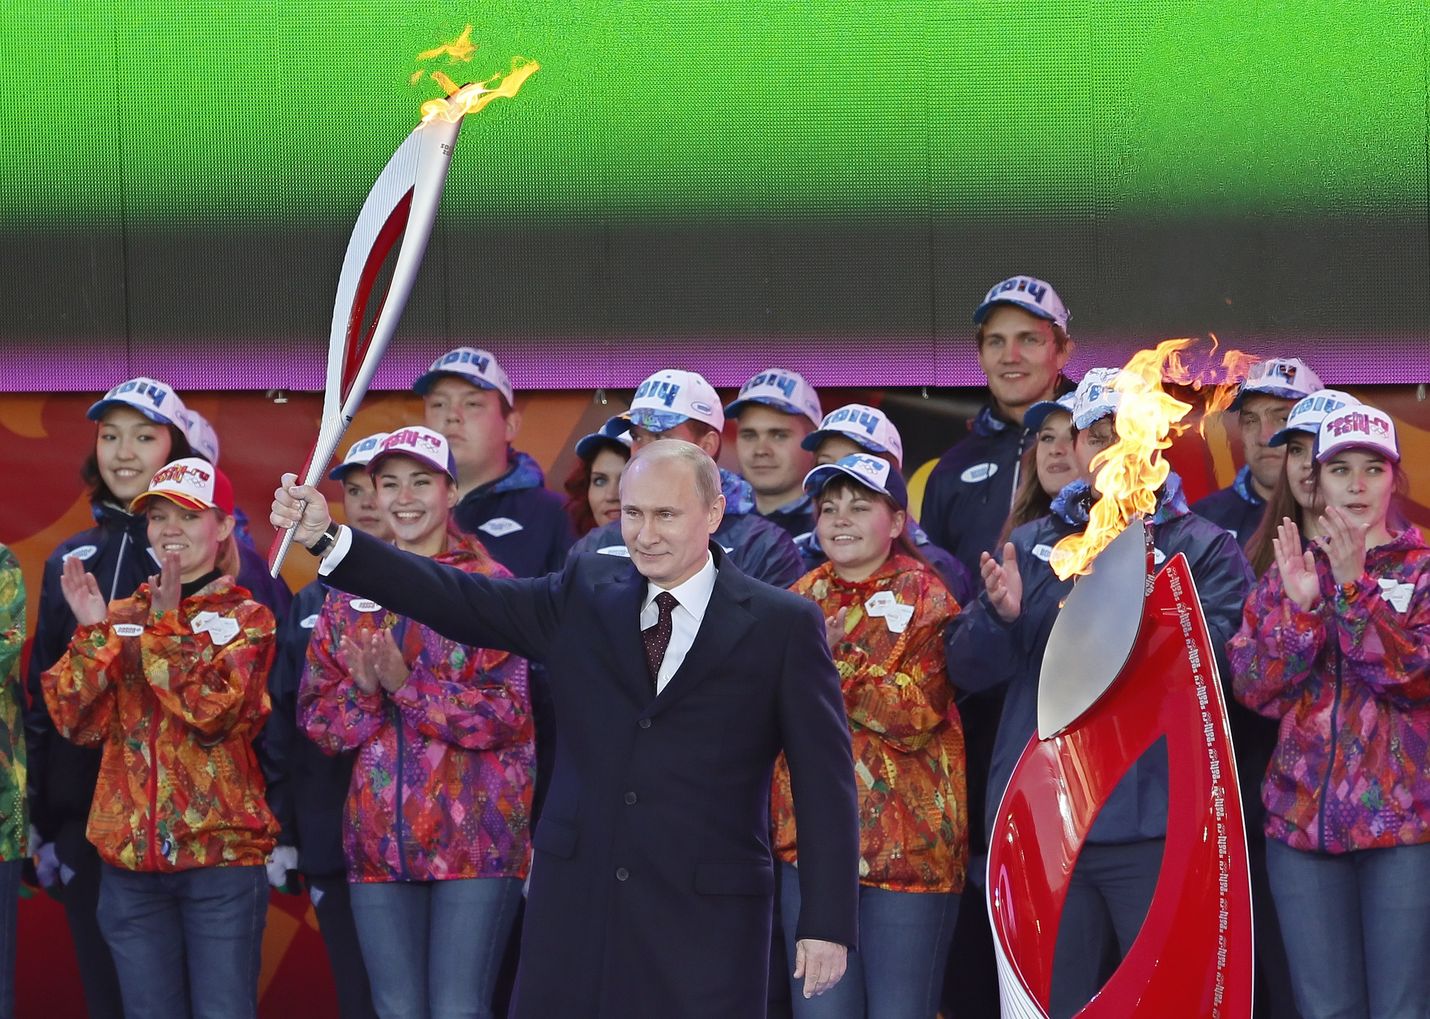 Venäjän presidentti Vladimir Putin kantoi olympiatulta juhlaseremonioissa Moskovan Punaisella torilla lokakuussa 2012. Sotshissa Venäjällä helmikuussa 2014 pidetyt olympialaiset muistetaan siitä, että niiden päätteeksi Putin määräsi Venäjän asemiehet miehittämään Ukrainalta Krimin ja Donbasin alueita.